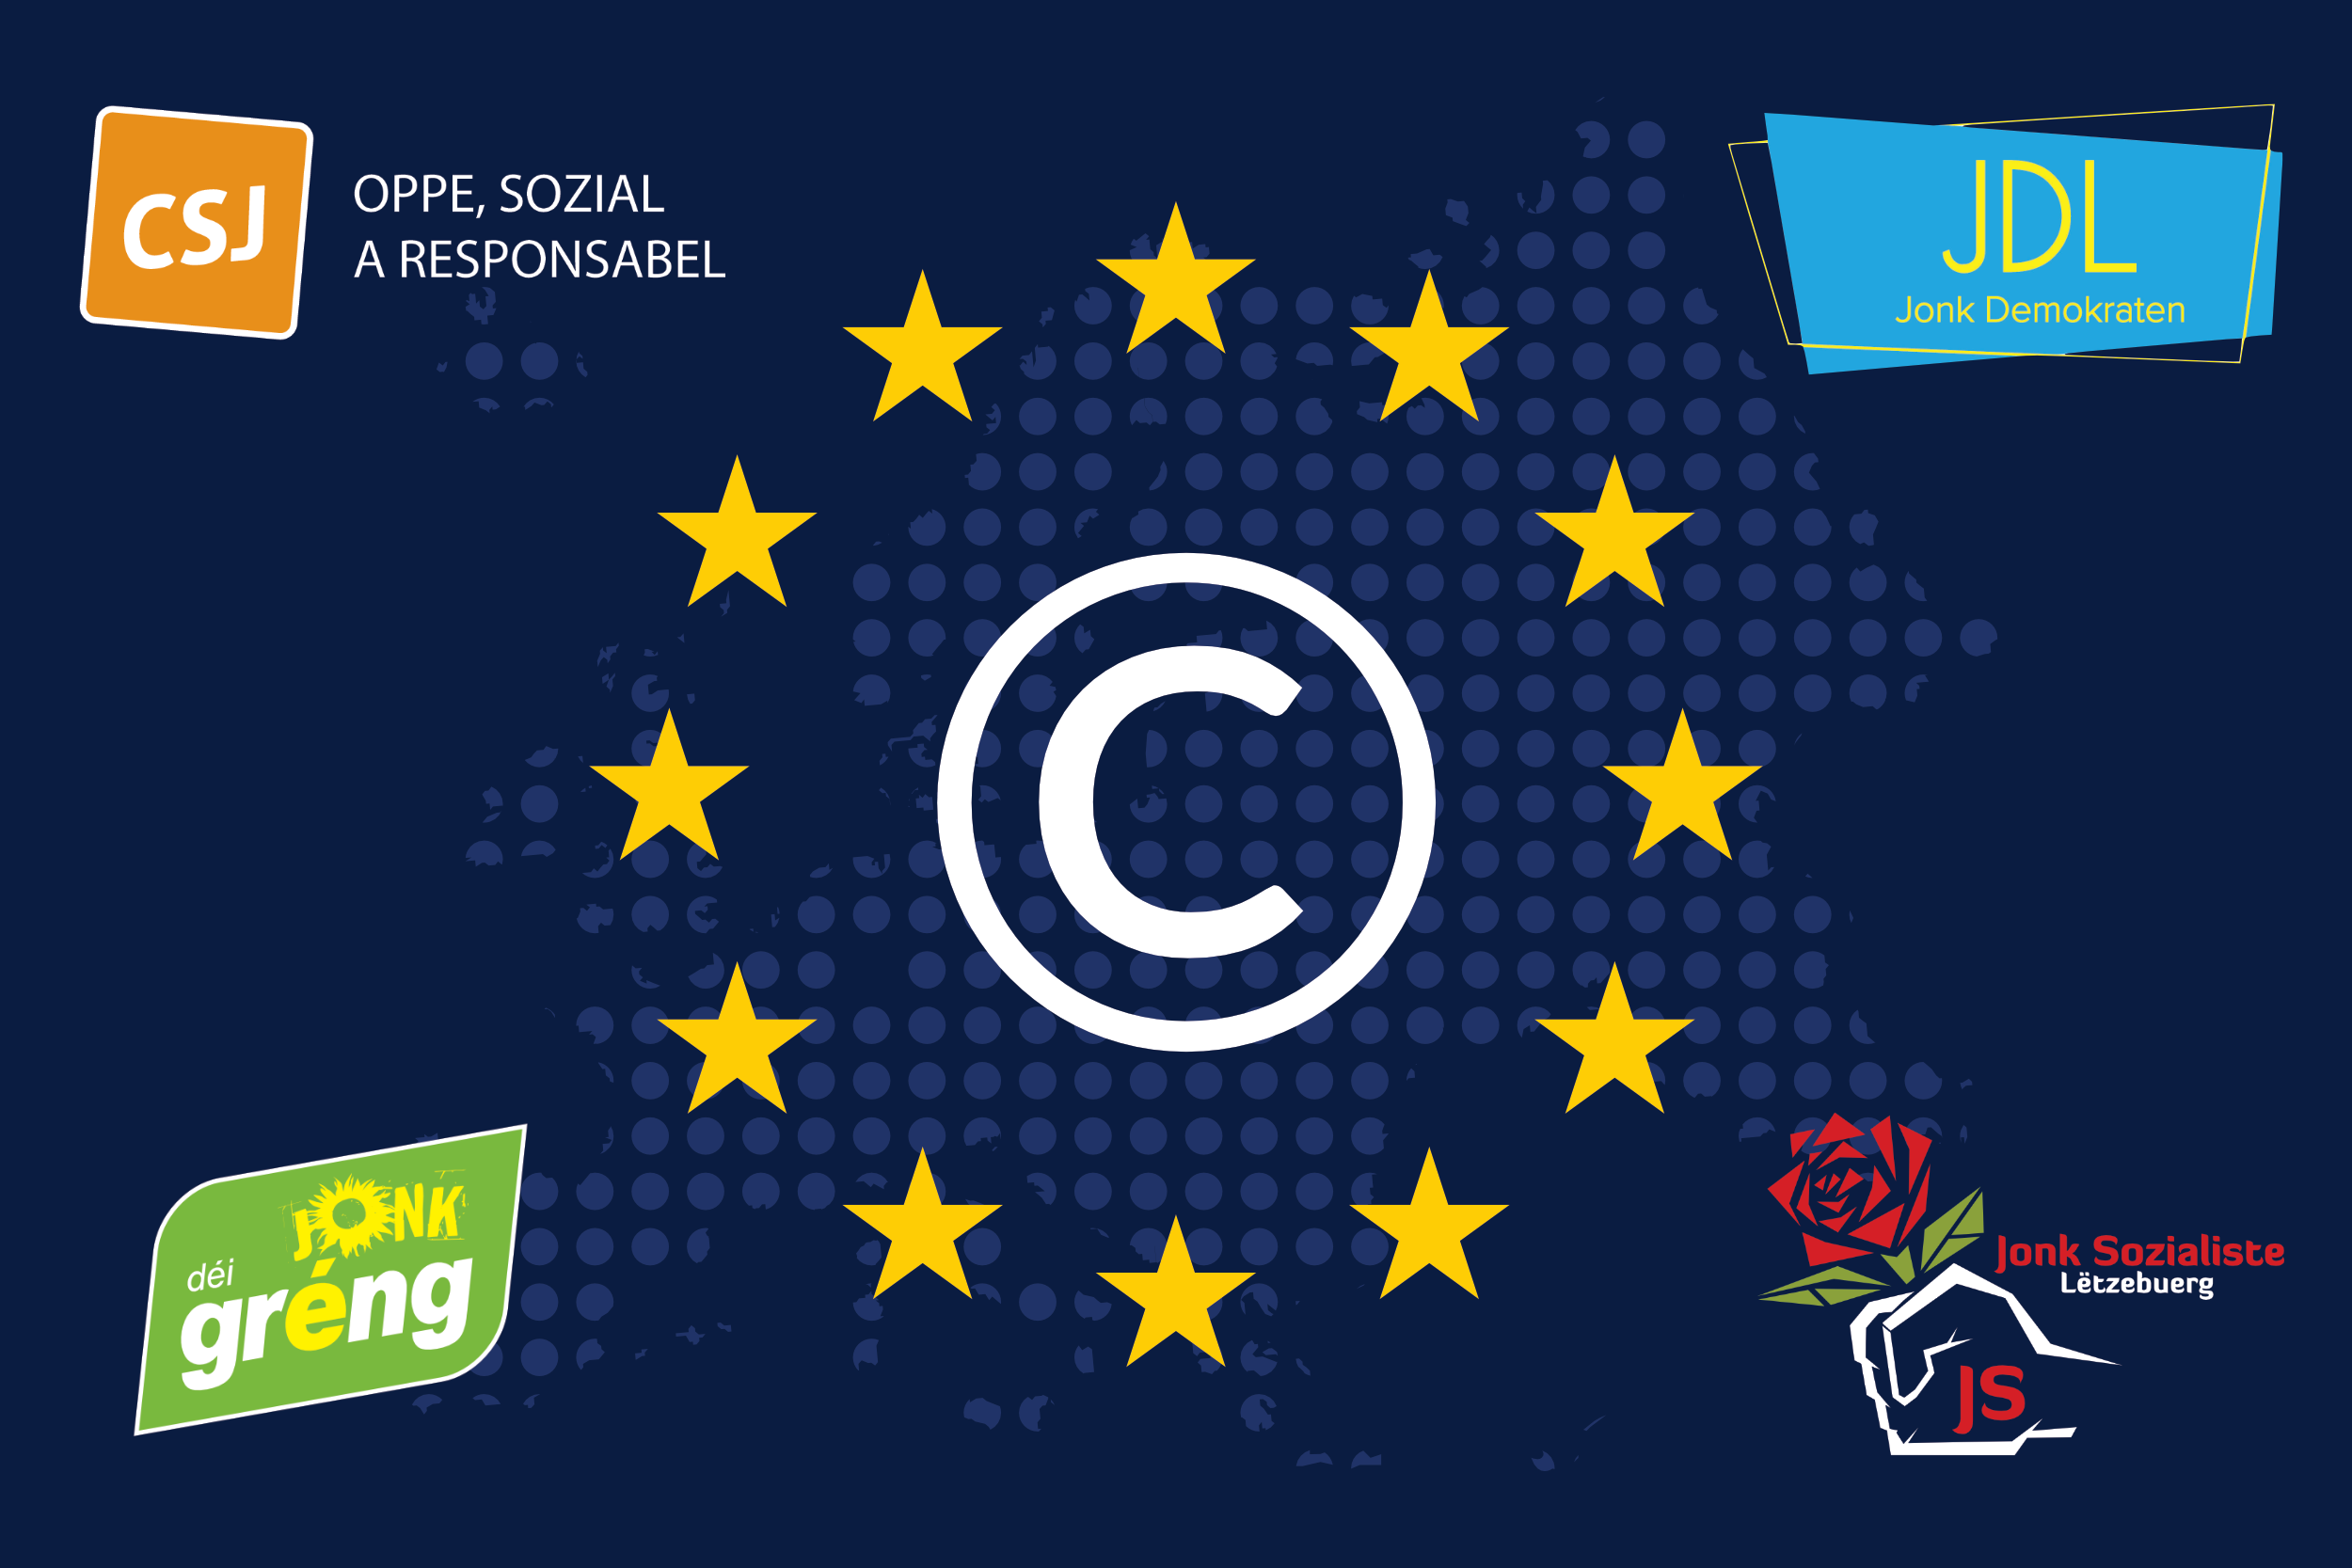 EU Copyright Direktiv – Jonken Opruff un d’Europadéputéiert Meenungsfräiheet um Internet a Gefor? #SaveYourInternet